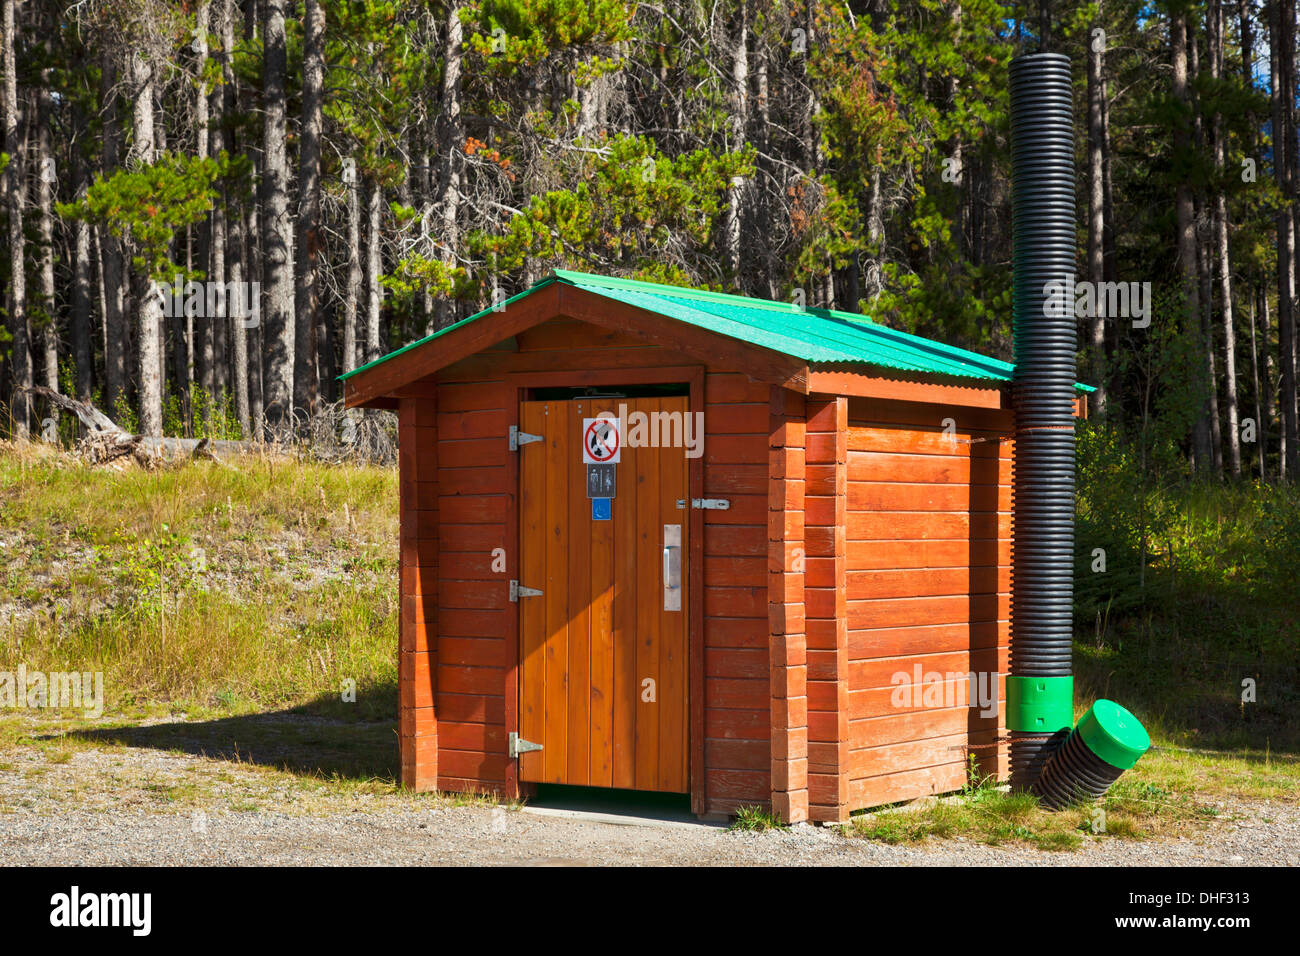 All'esterno riducendo in concime organico naturale wc a secco nel Parco Nazionale di Banff Alberta Canada Foto Stock